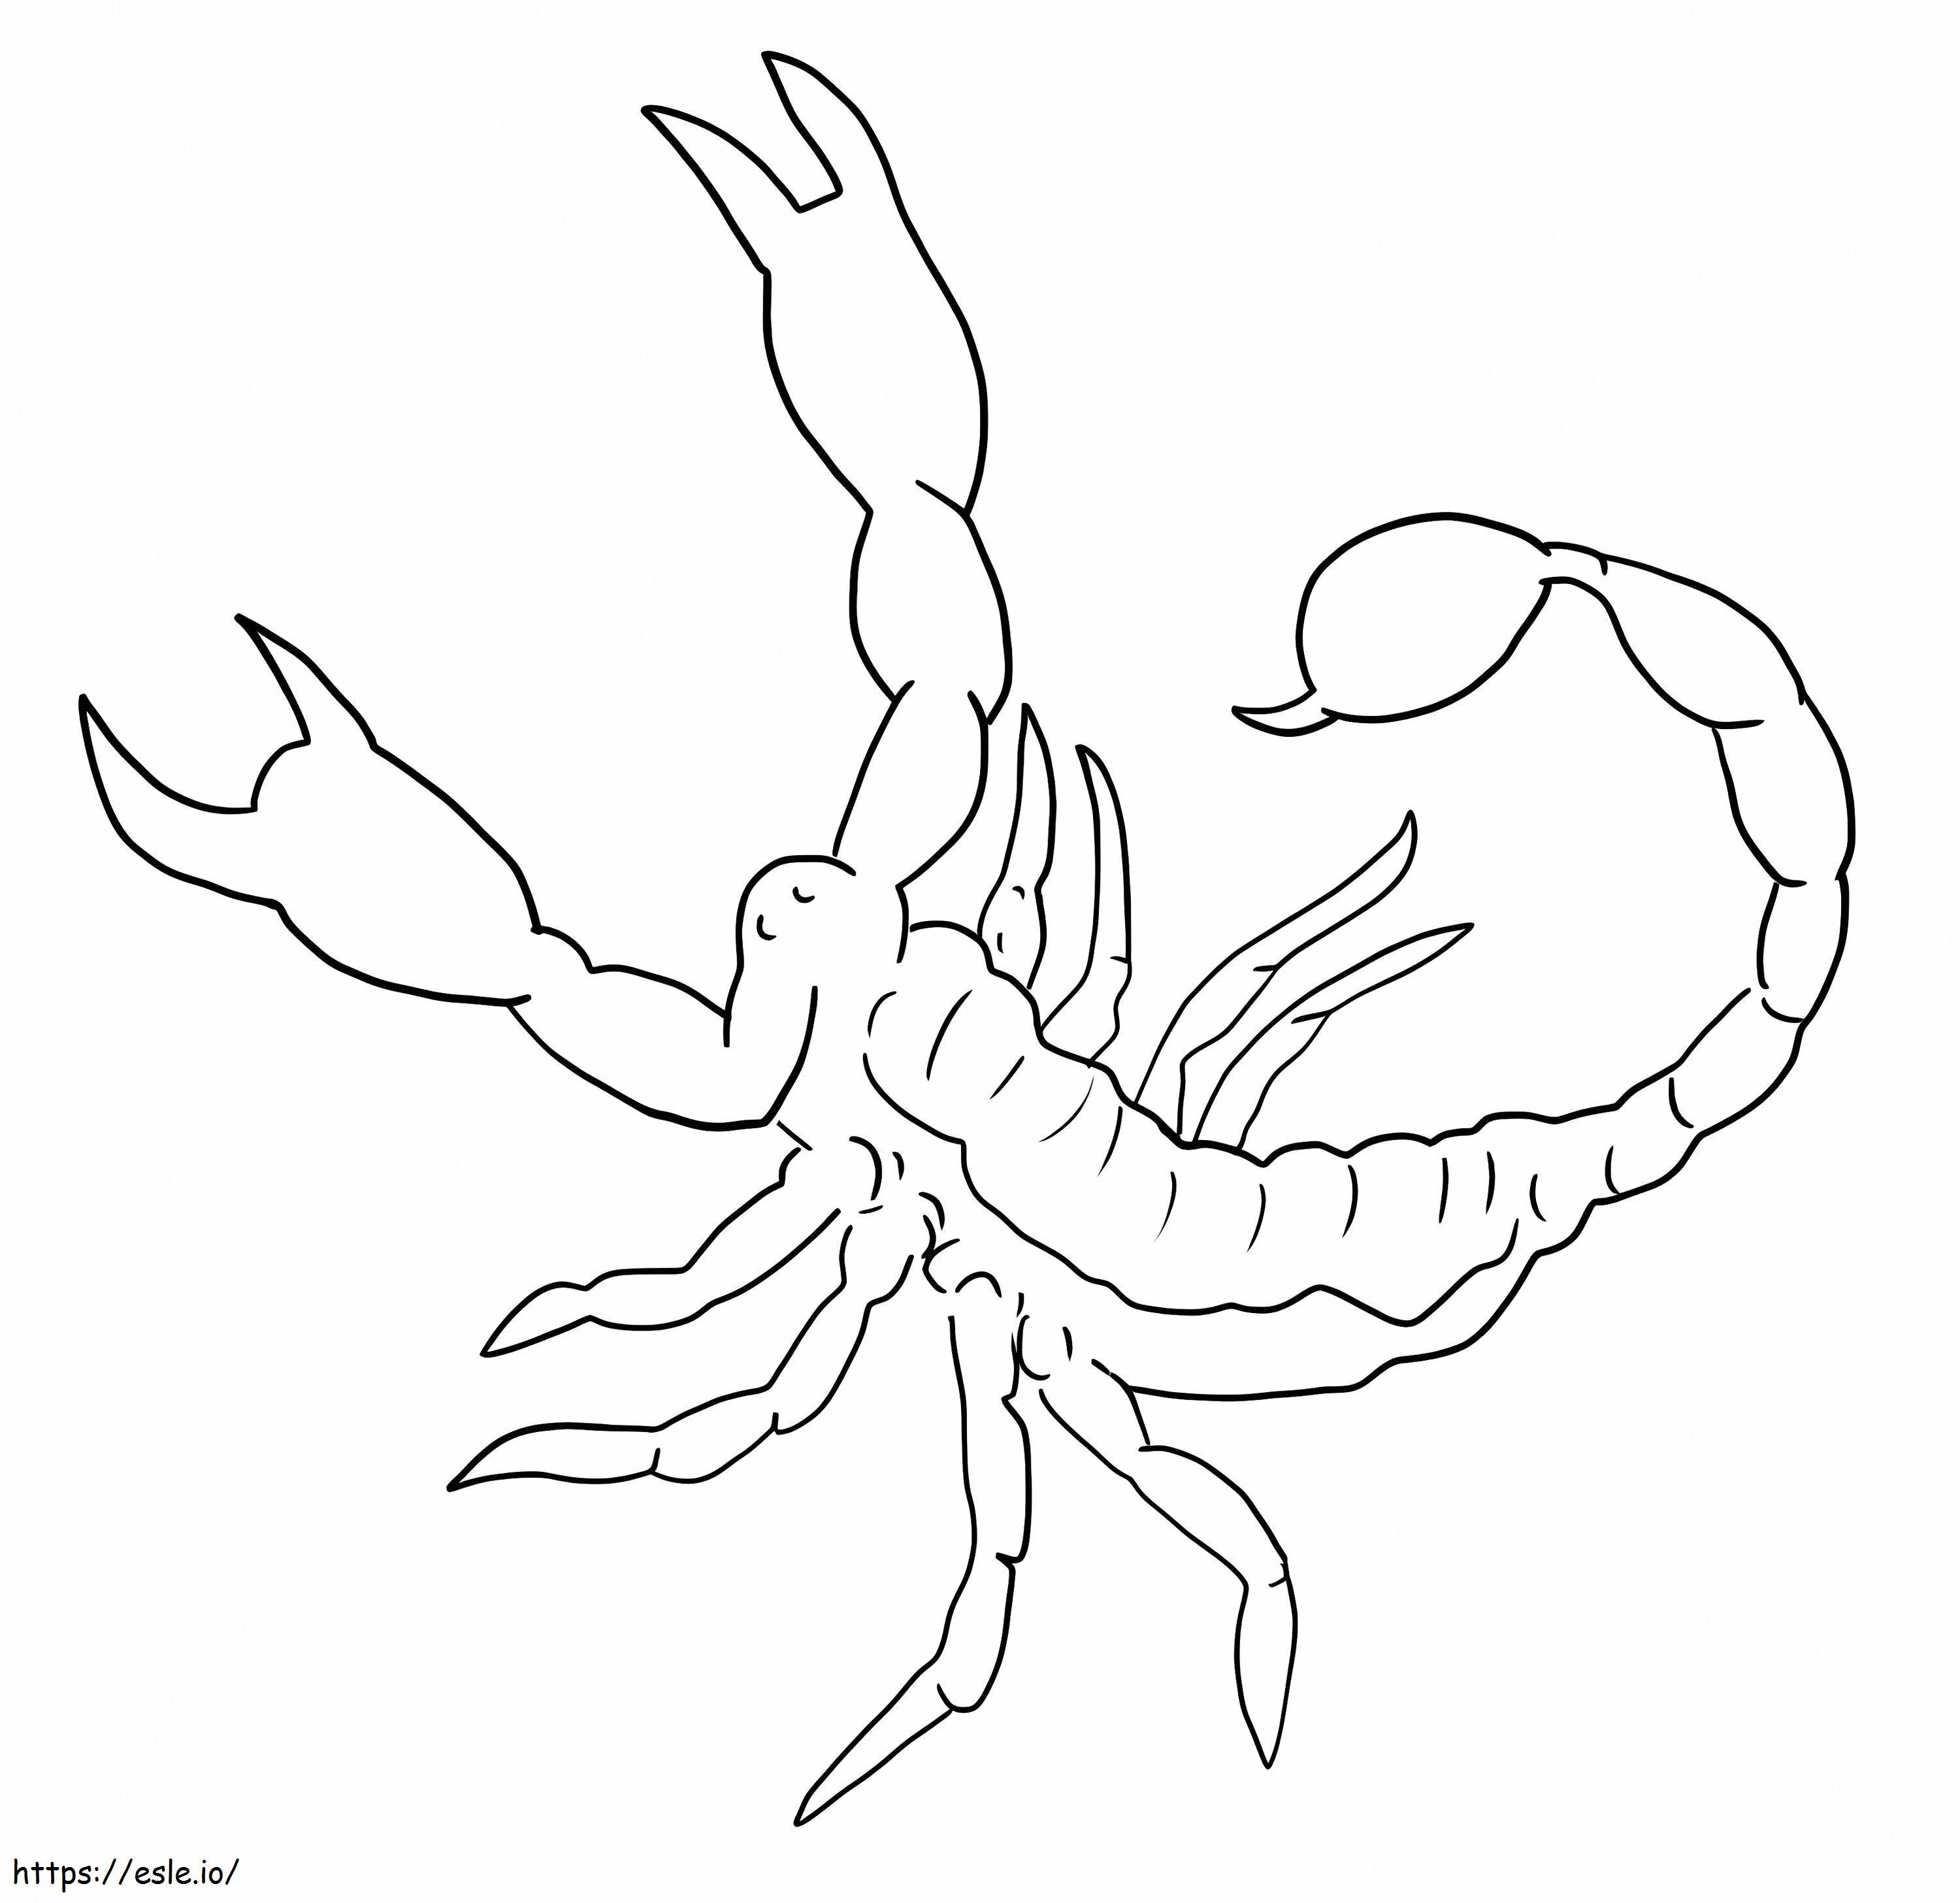 Coloriage Scorpion imprimable à imprimer dessin